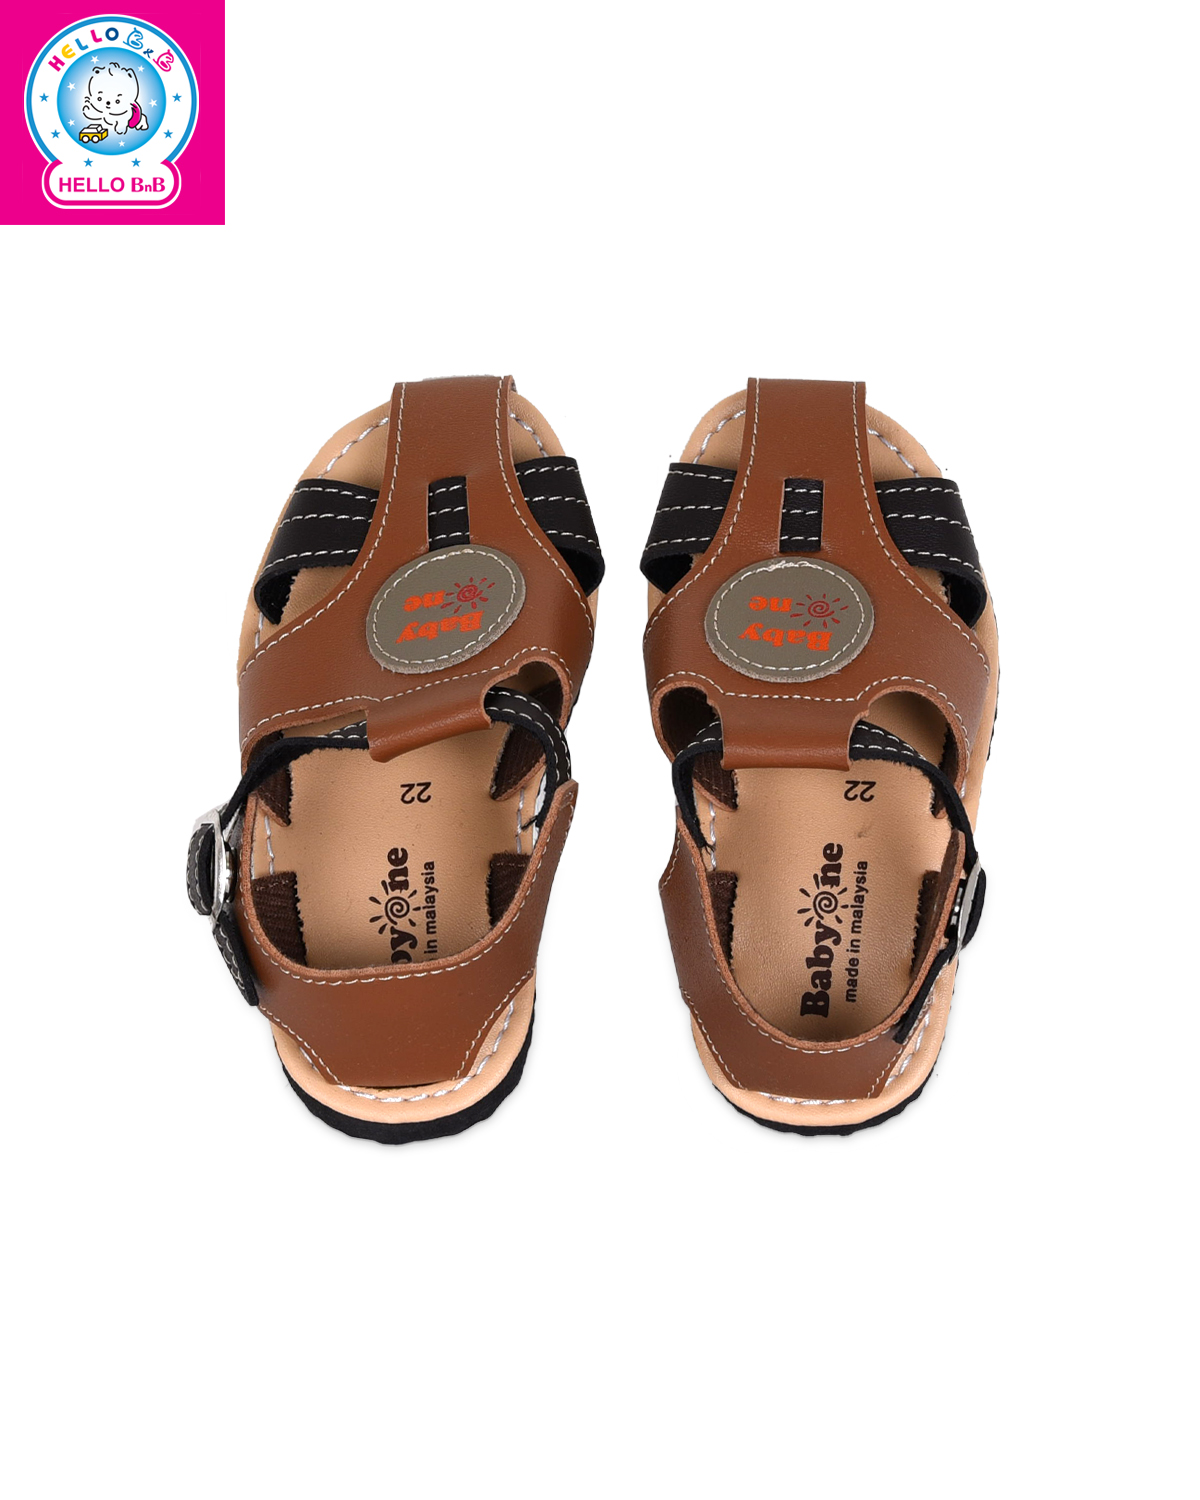 Giày sandal BabyOne 0806 size 26 Brown